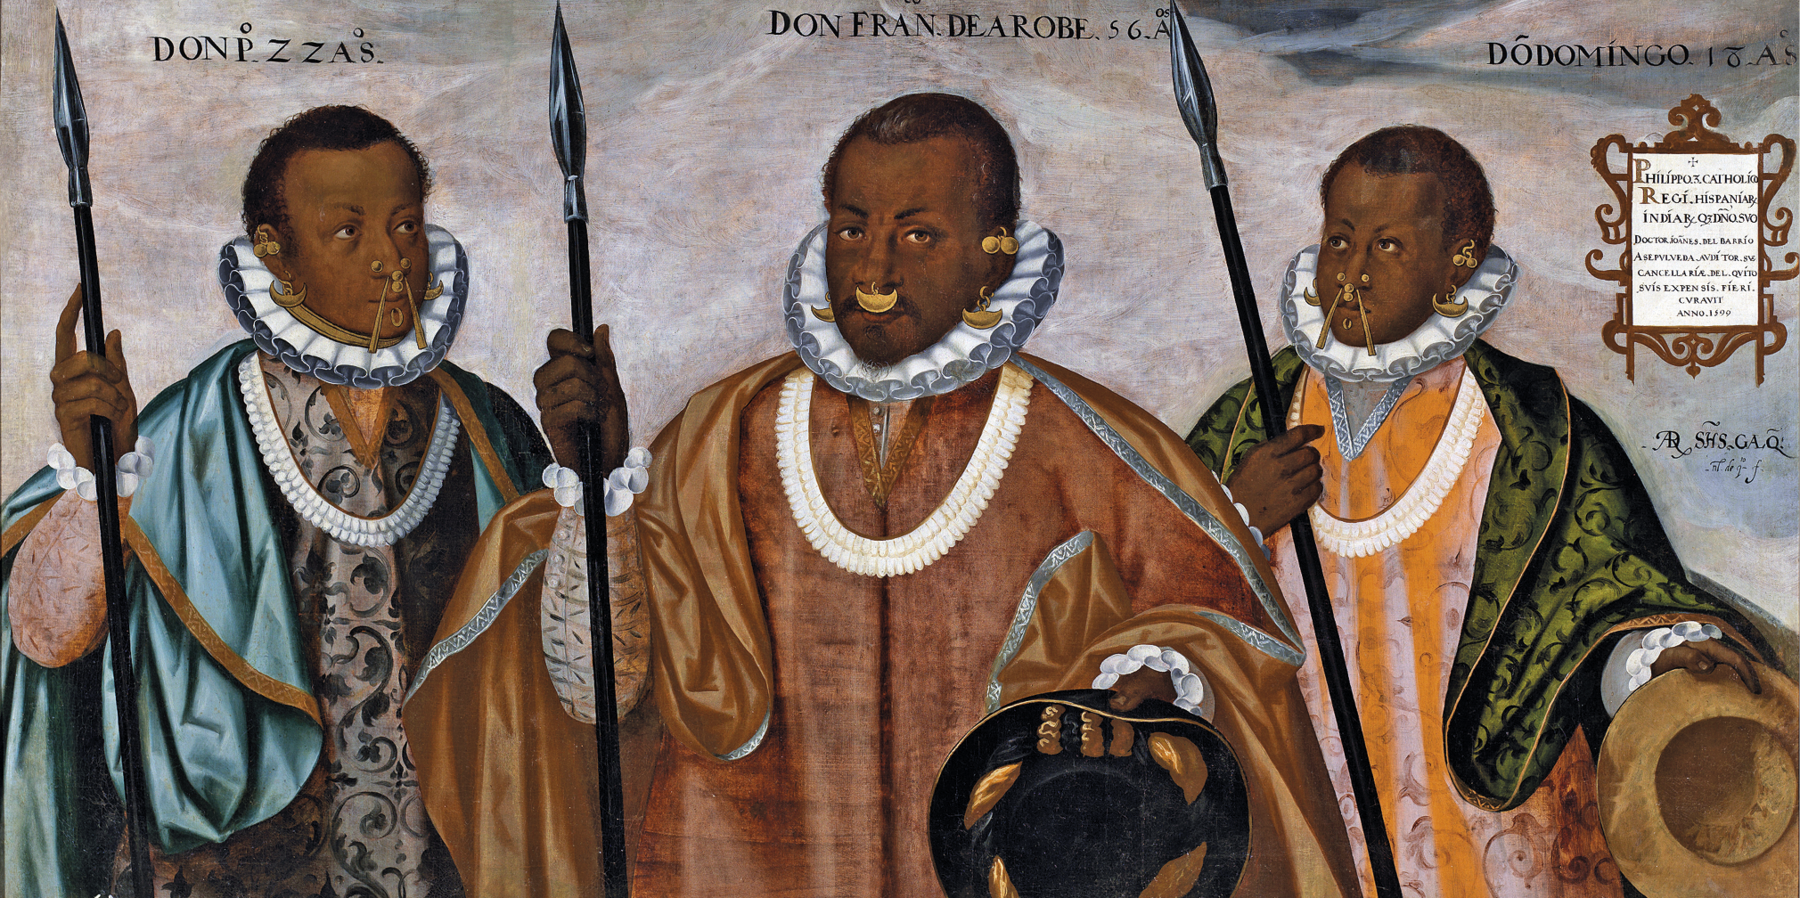 Pintura. Três homens negros com brincos nas orelhas e no nariz, usando mantos longos detalhados, com rufos (gola redonda branca com babados). Eles seguram lanças em uma mão e chapéus na outra.